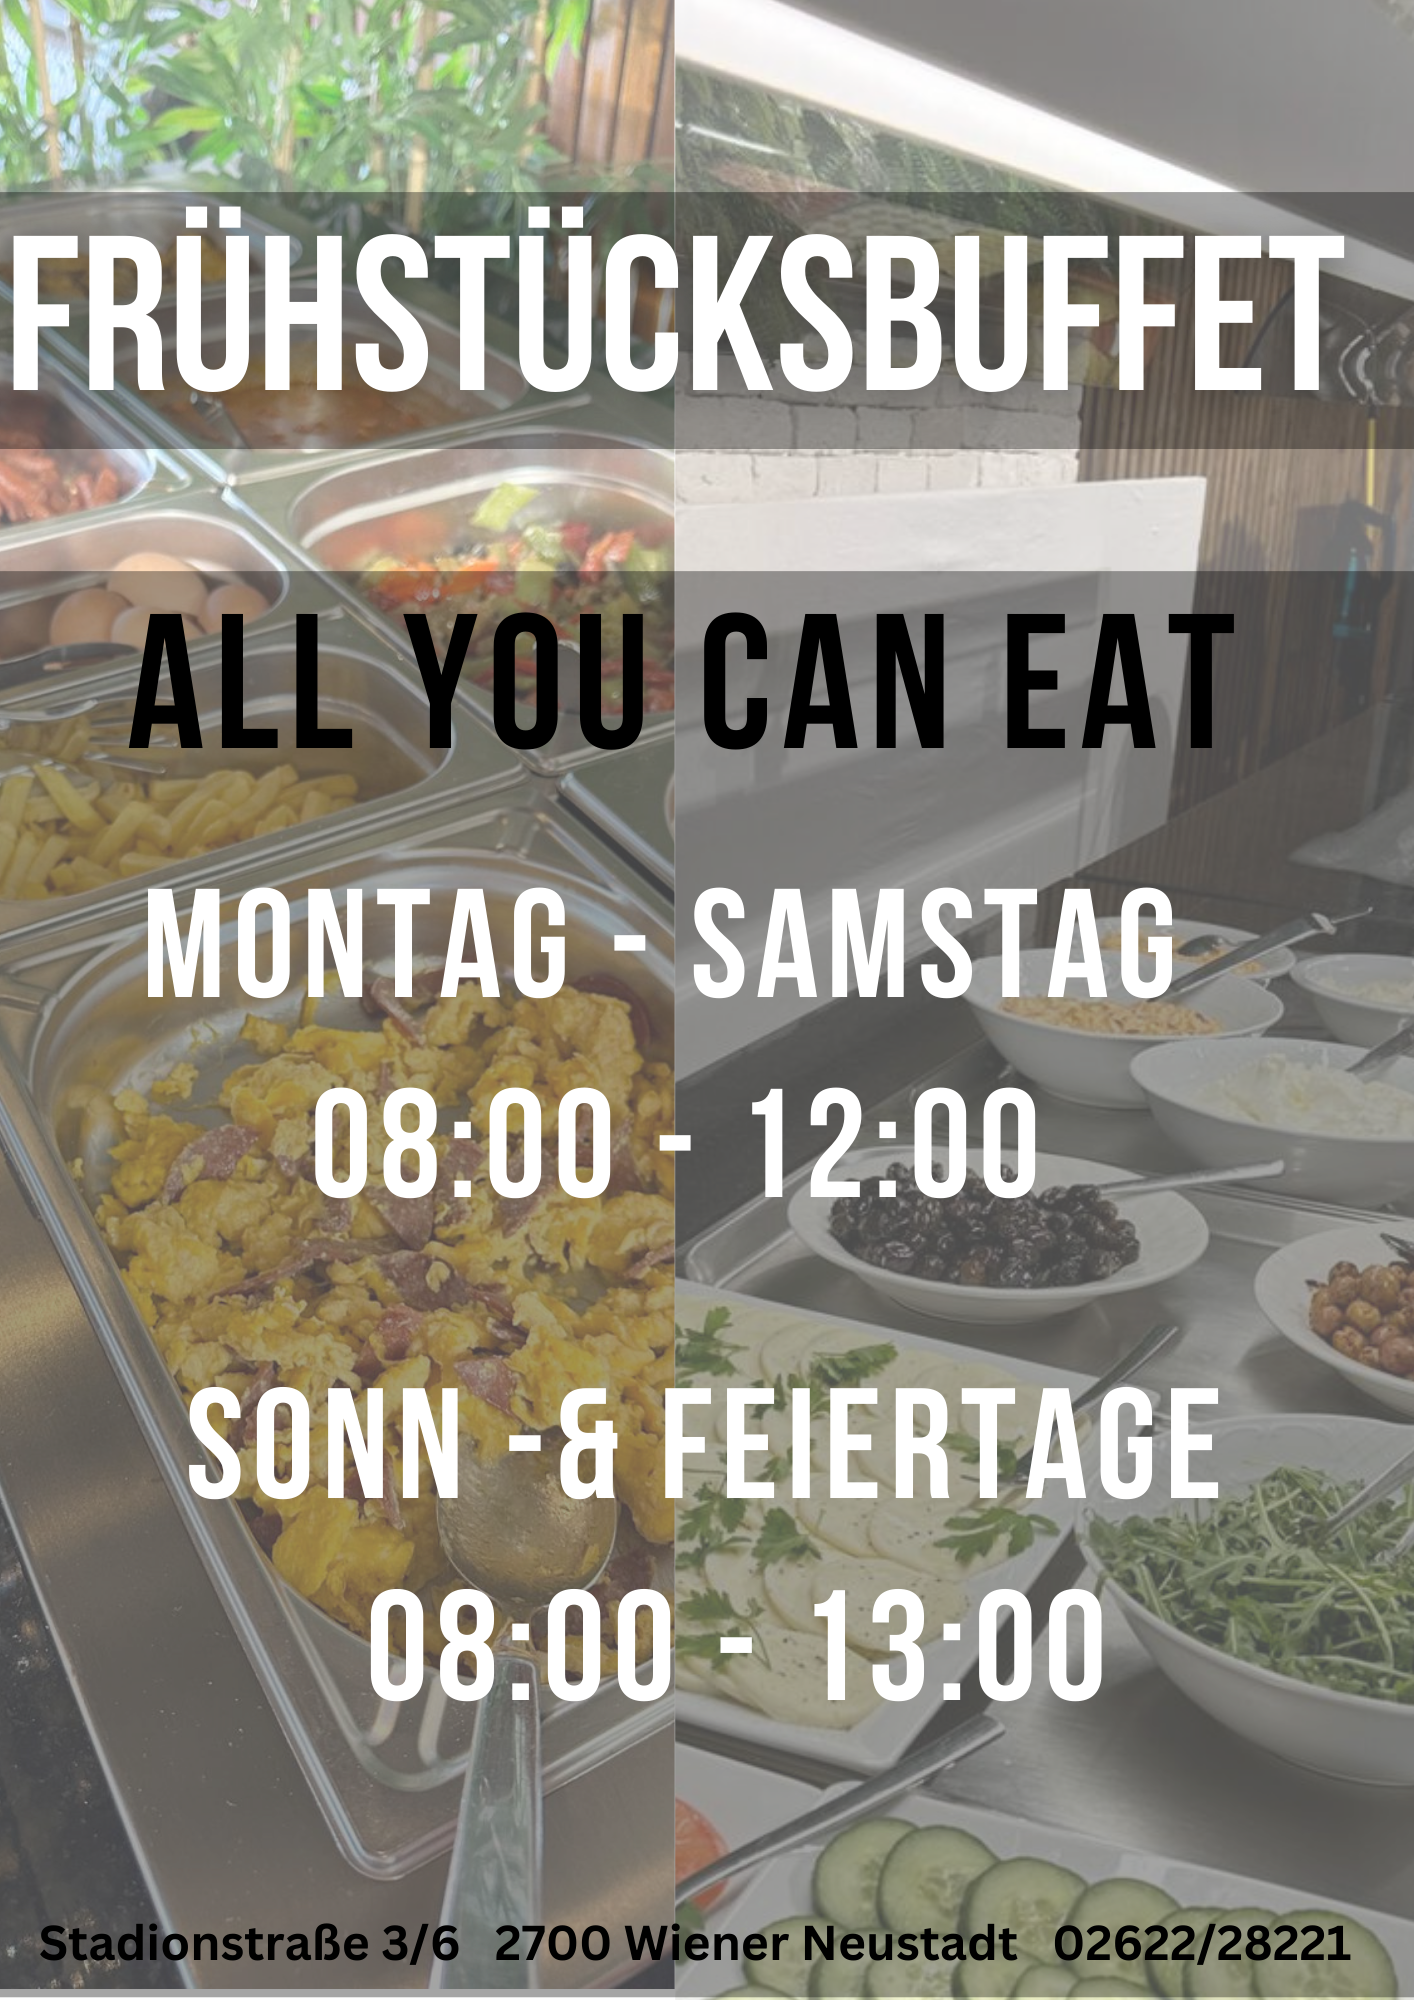 the garden - Frühstücksbuffet (all you can eat)